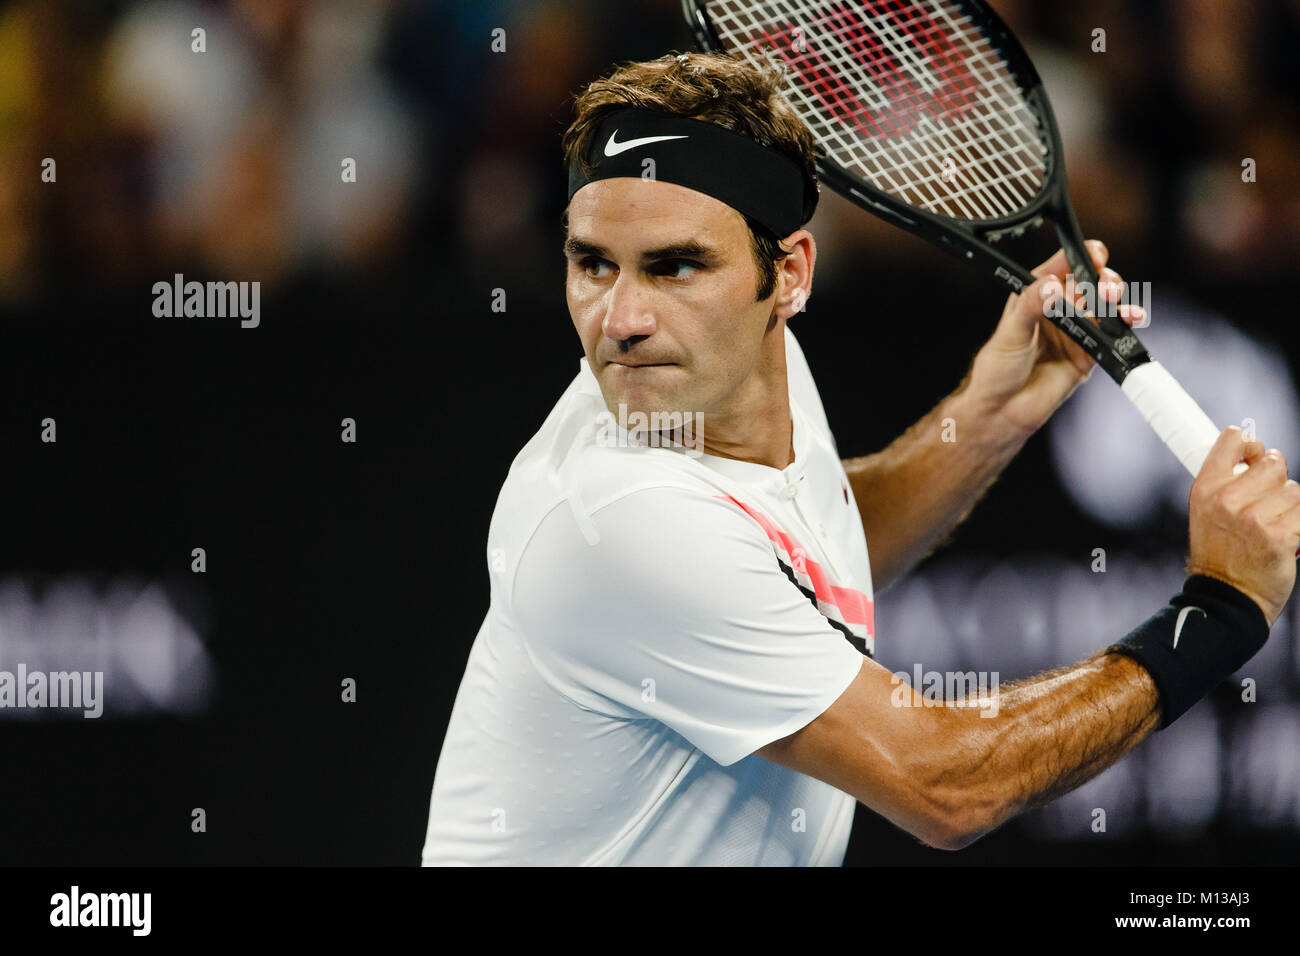 Melbourne, Australie, le 26 janvier 2018 : Le joueur de tennis suisse Roger Federer jouera sa 30e finale de Grand Chelem à l'Open d'Australie 2018 à Melbourne Park. Crédit : Frank Molter/Alamy Live News Banque D'Images